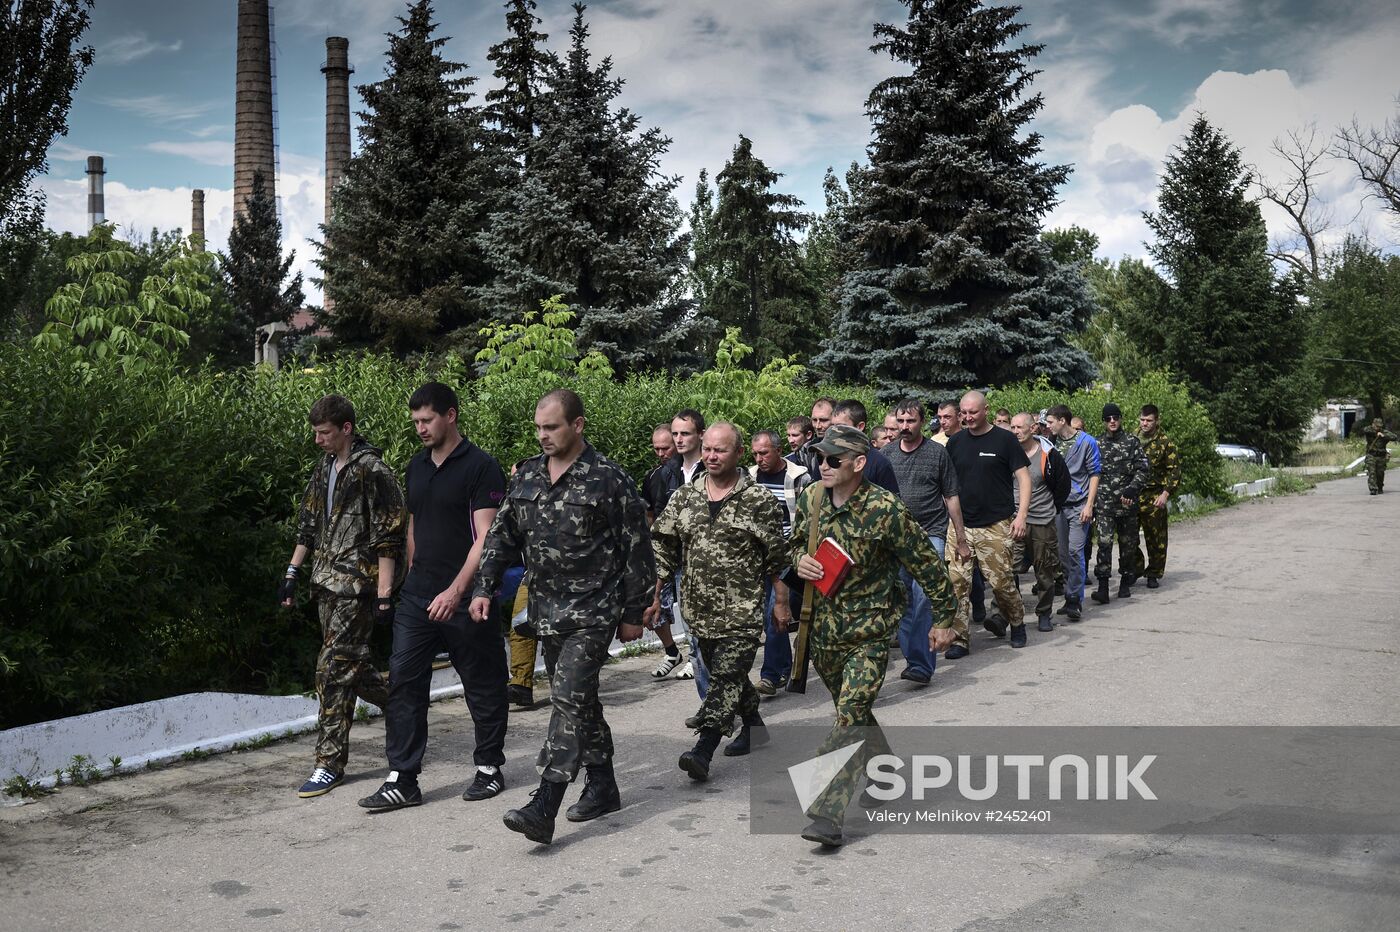 Lugansk Region update. The Prizrak (Ghost) battalion of the Lugansk People's Volunteer Corps